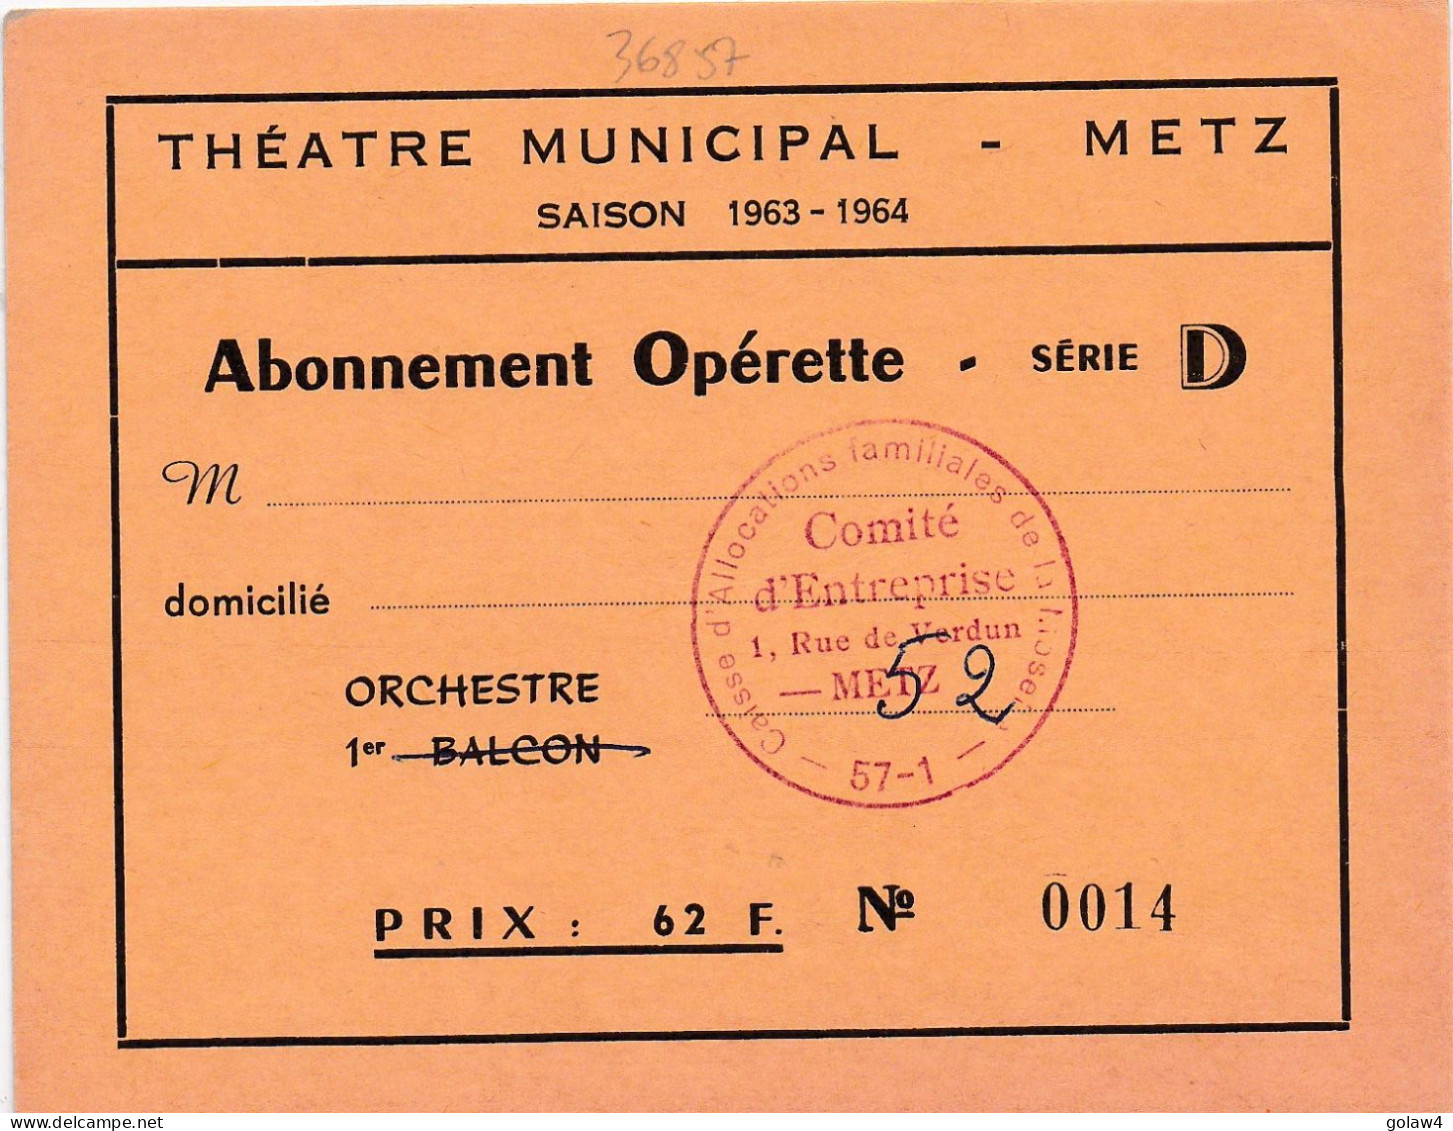 36857 THEATRE MUNICIPAL METZ SAISON 1963 1964 ABONNEMENT OPERETTE SERIE ORCHESTRE CAISSE ALLOCATIONS FAMILIALLES MOSELLE - Tickets D'entrée